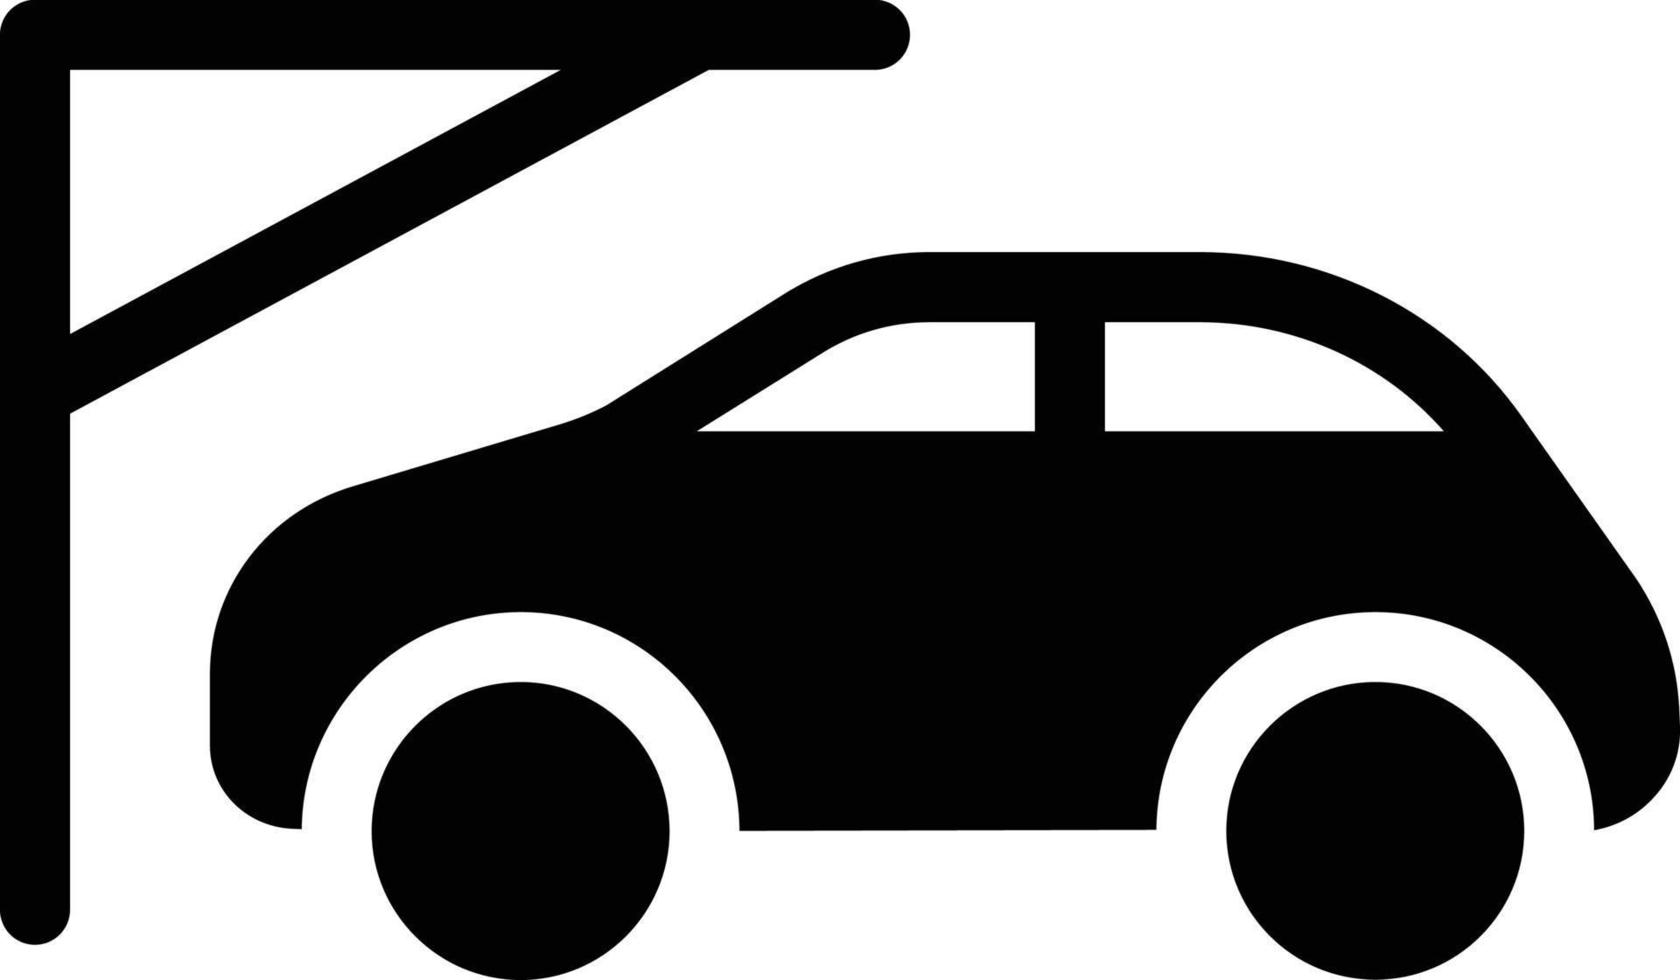 ilustração vetorial de estacionamento de carro em ícones de símbolos.vector de qualidade background.premium para conceito e design gráfico. vetor